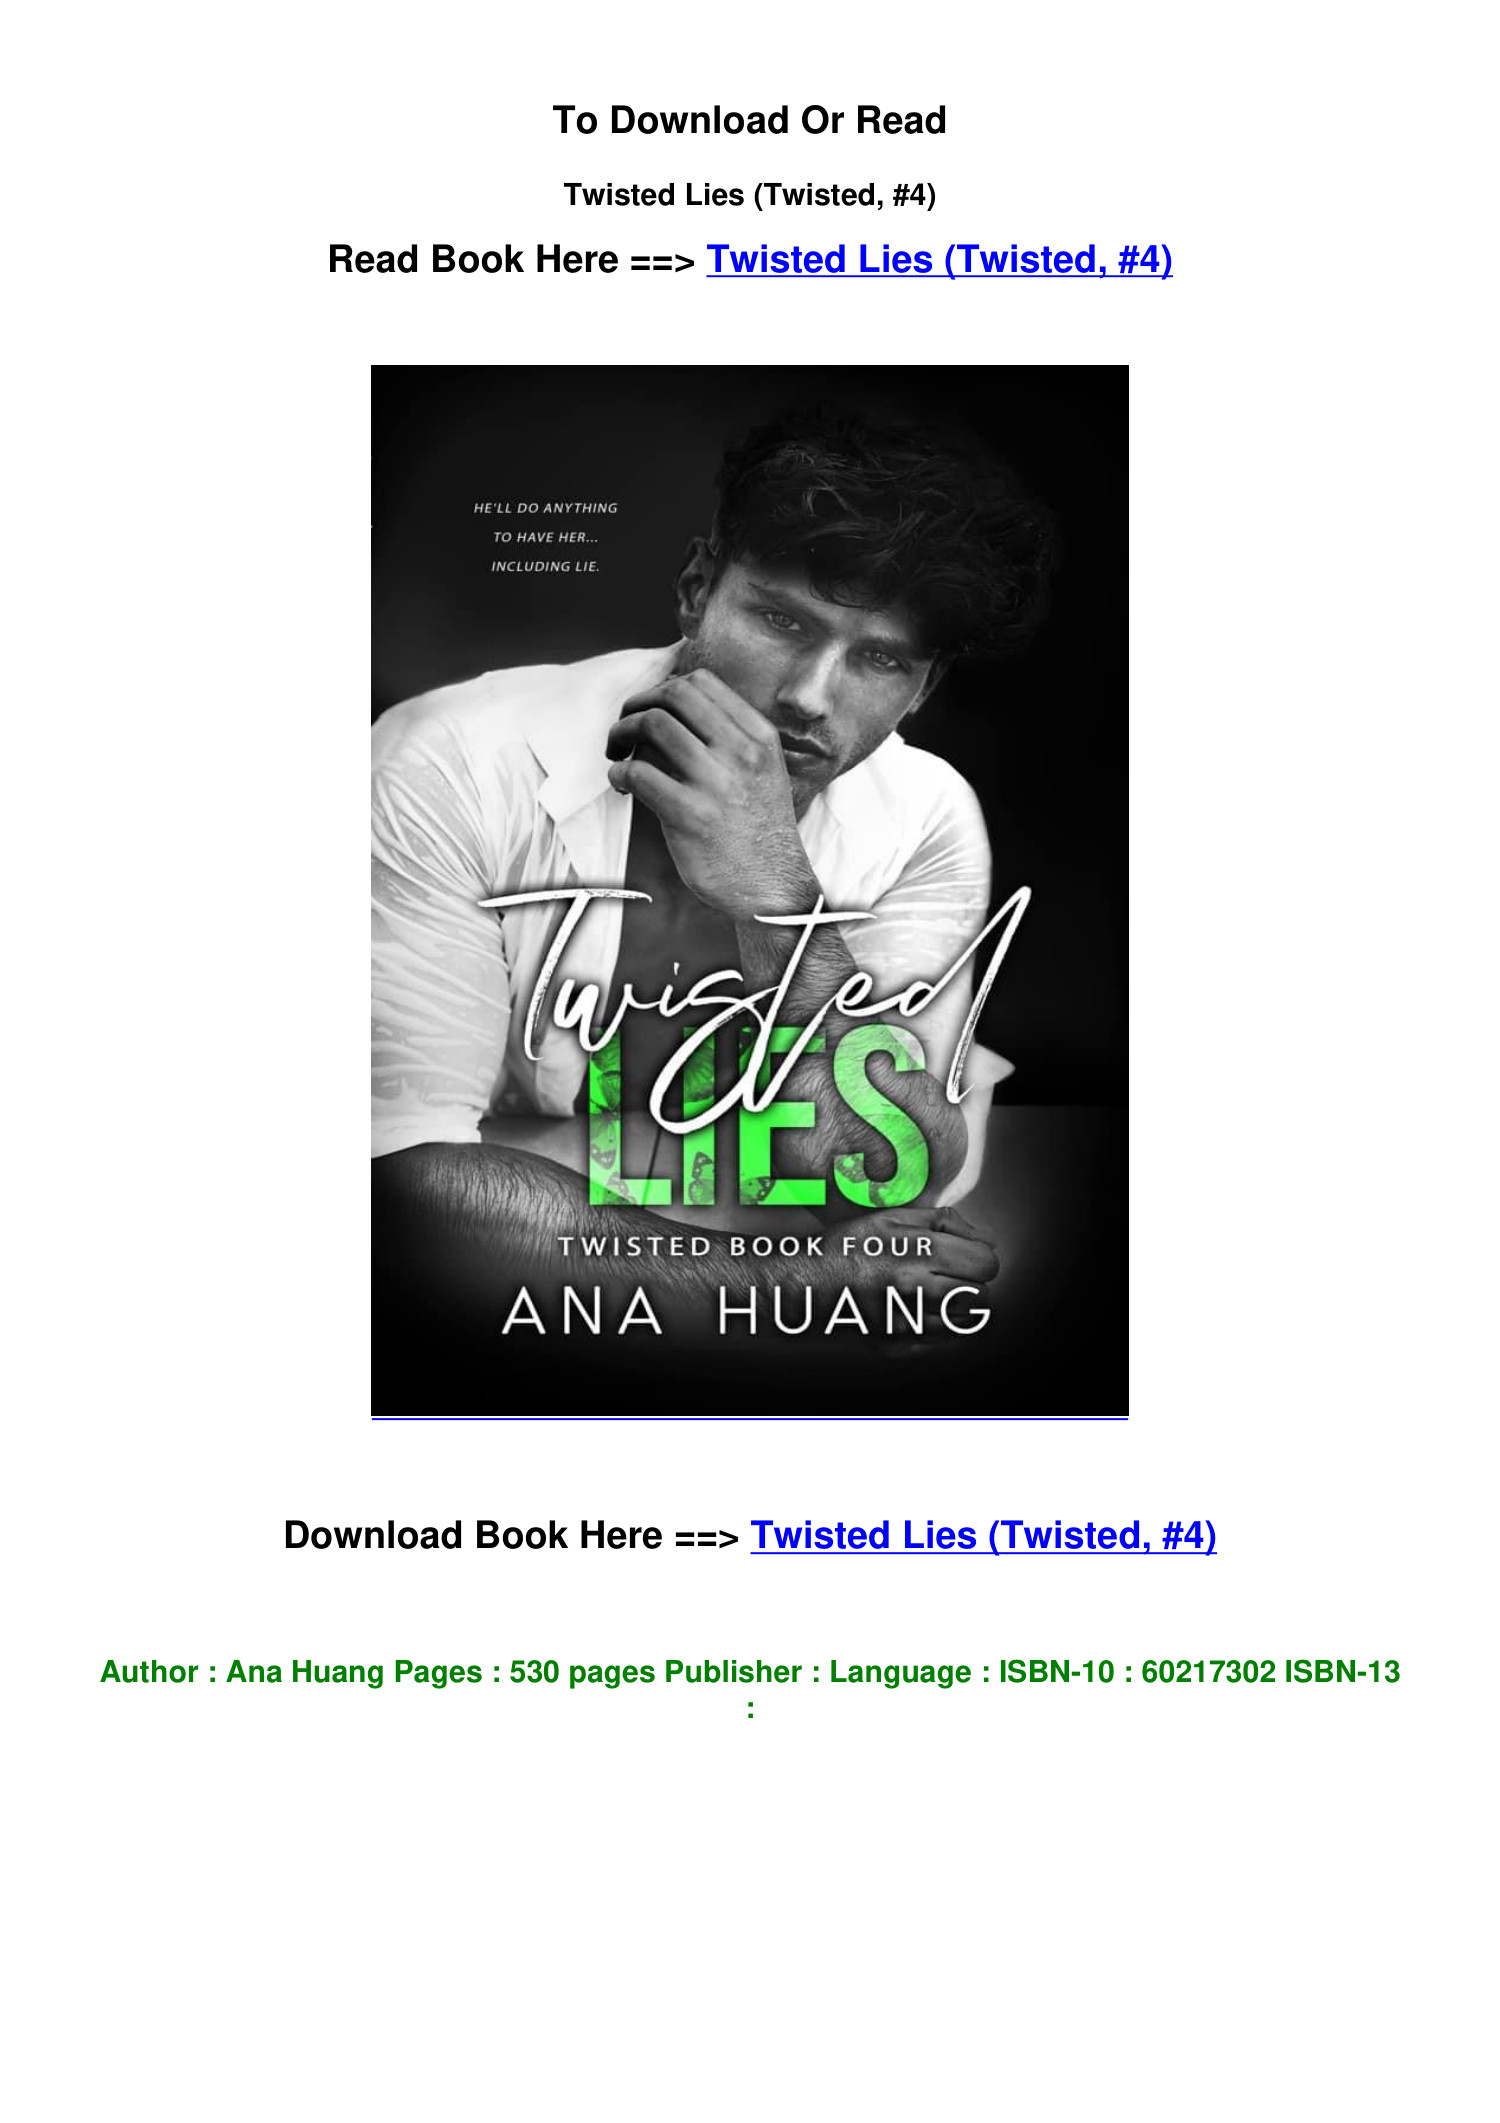 Reseña de Twisted Lies de Ana Huang (Twisted #4) - Con tinta y letras